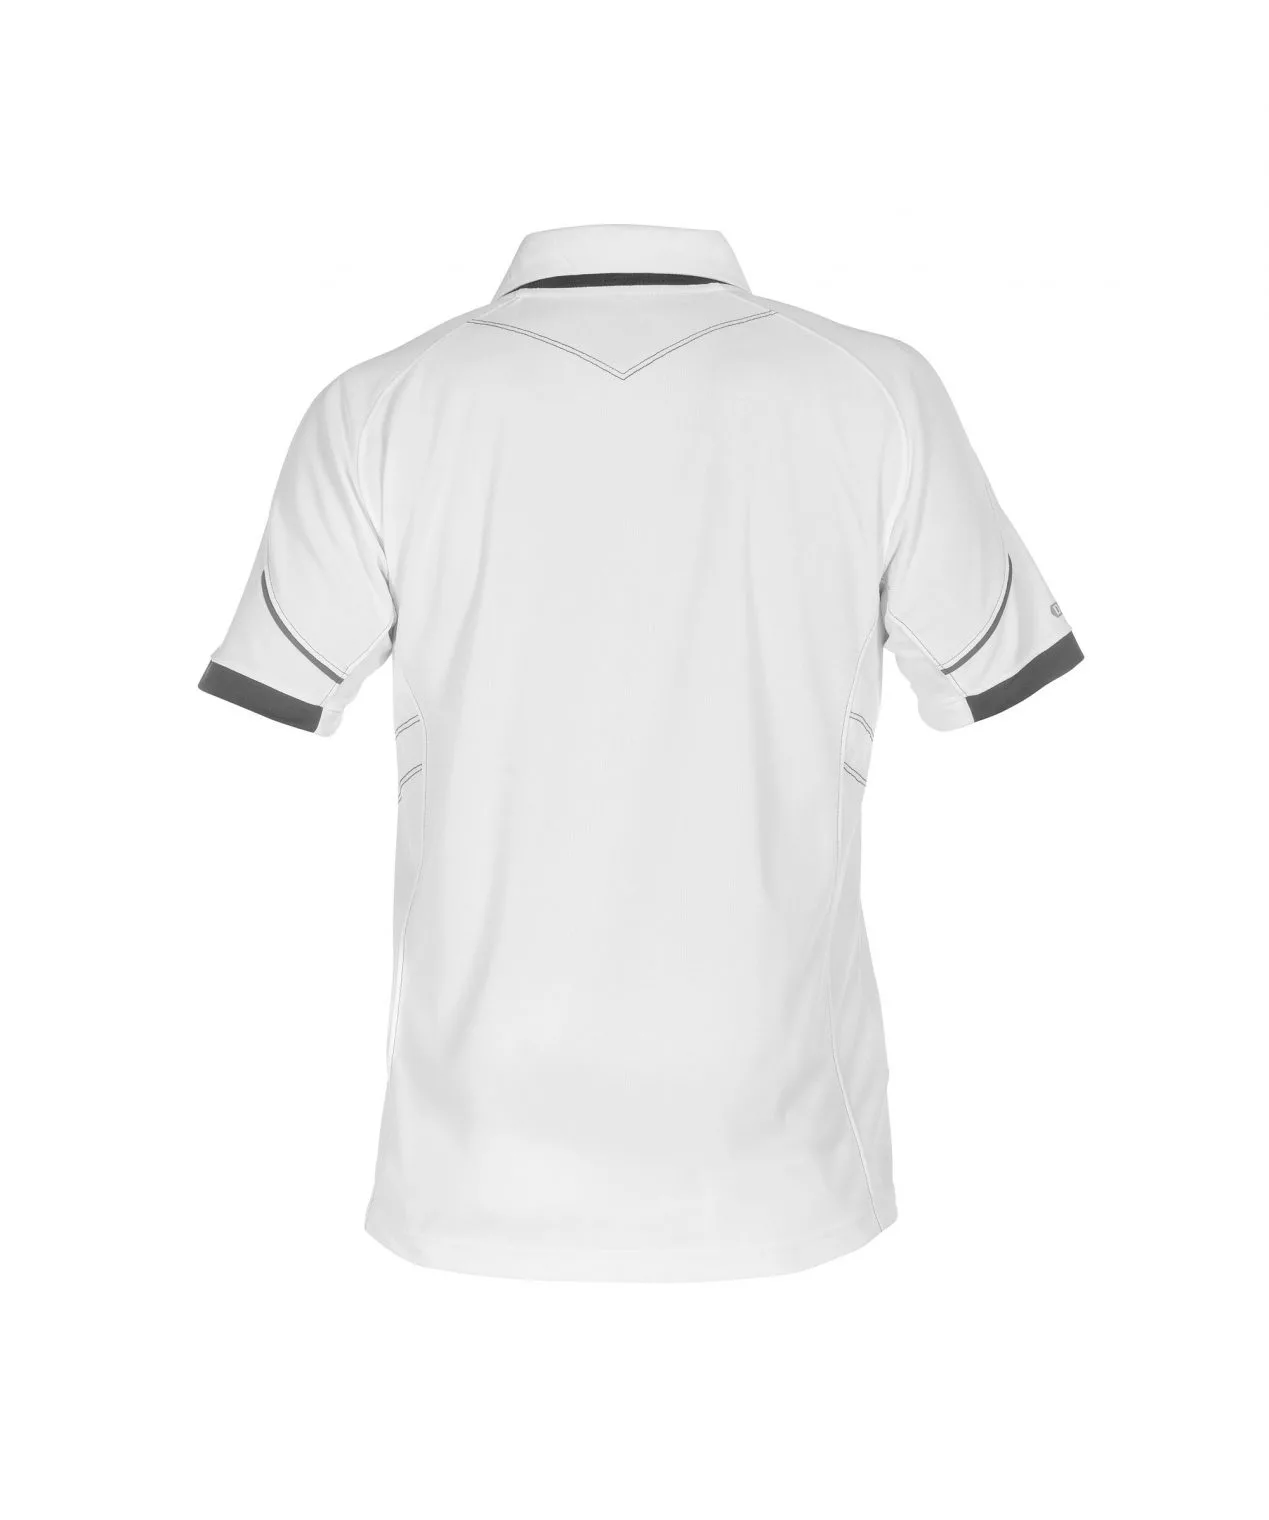 Dassy Traxion Herren Poloshirt (Uv-Sonnenschutz)